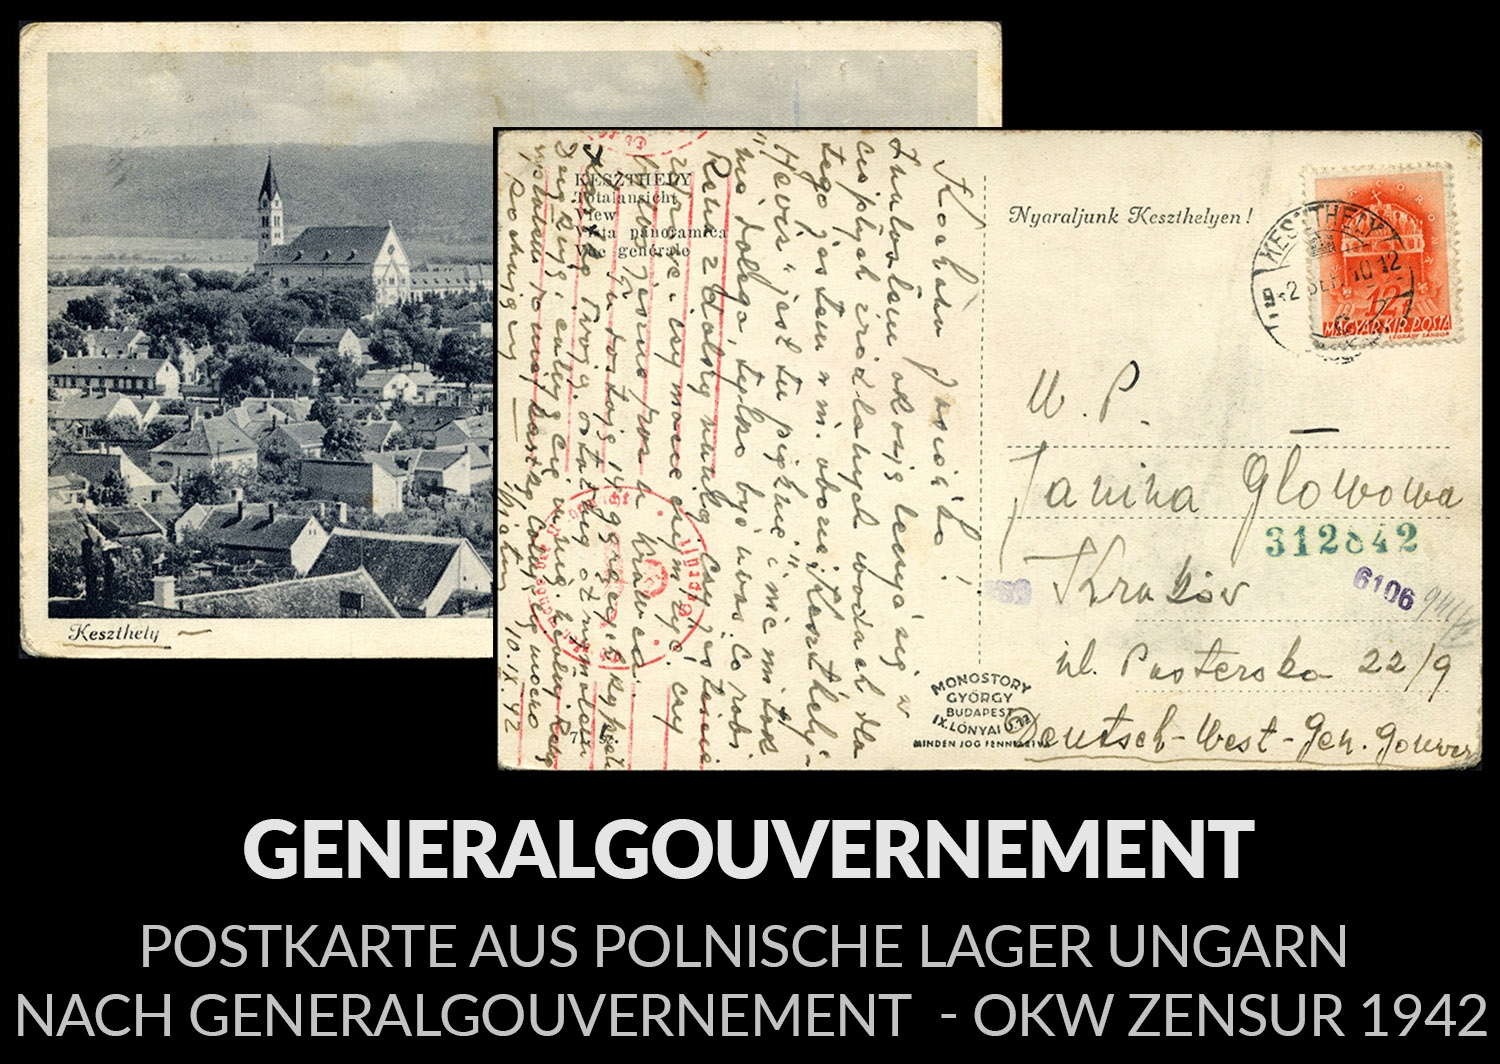 Postkarte aus polnische lager UNGARN nach Generalgouvernement - OKW Zensur 1940